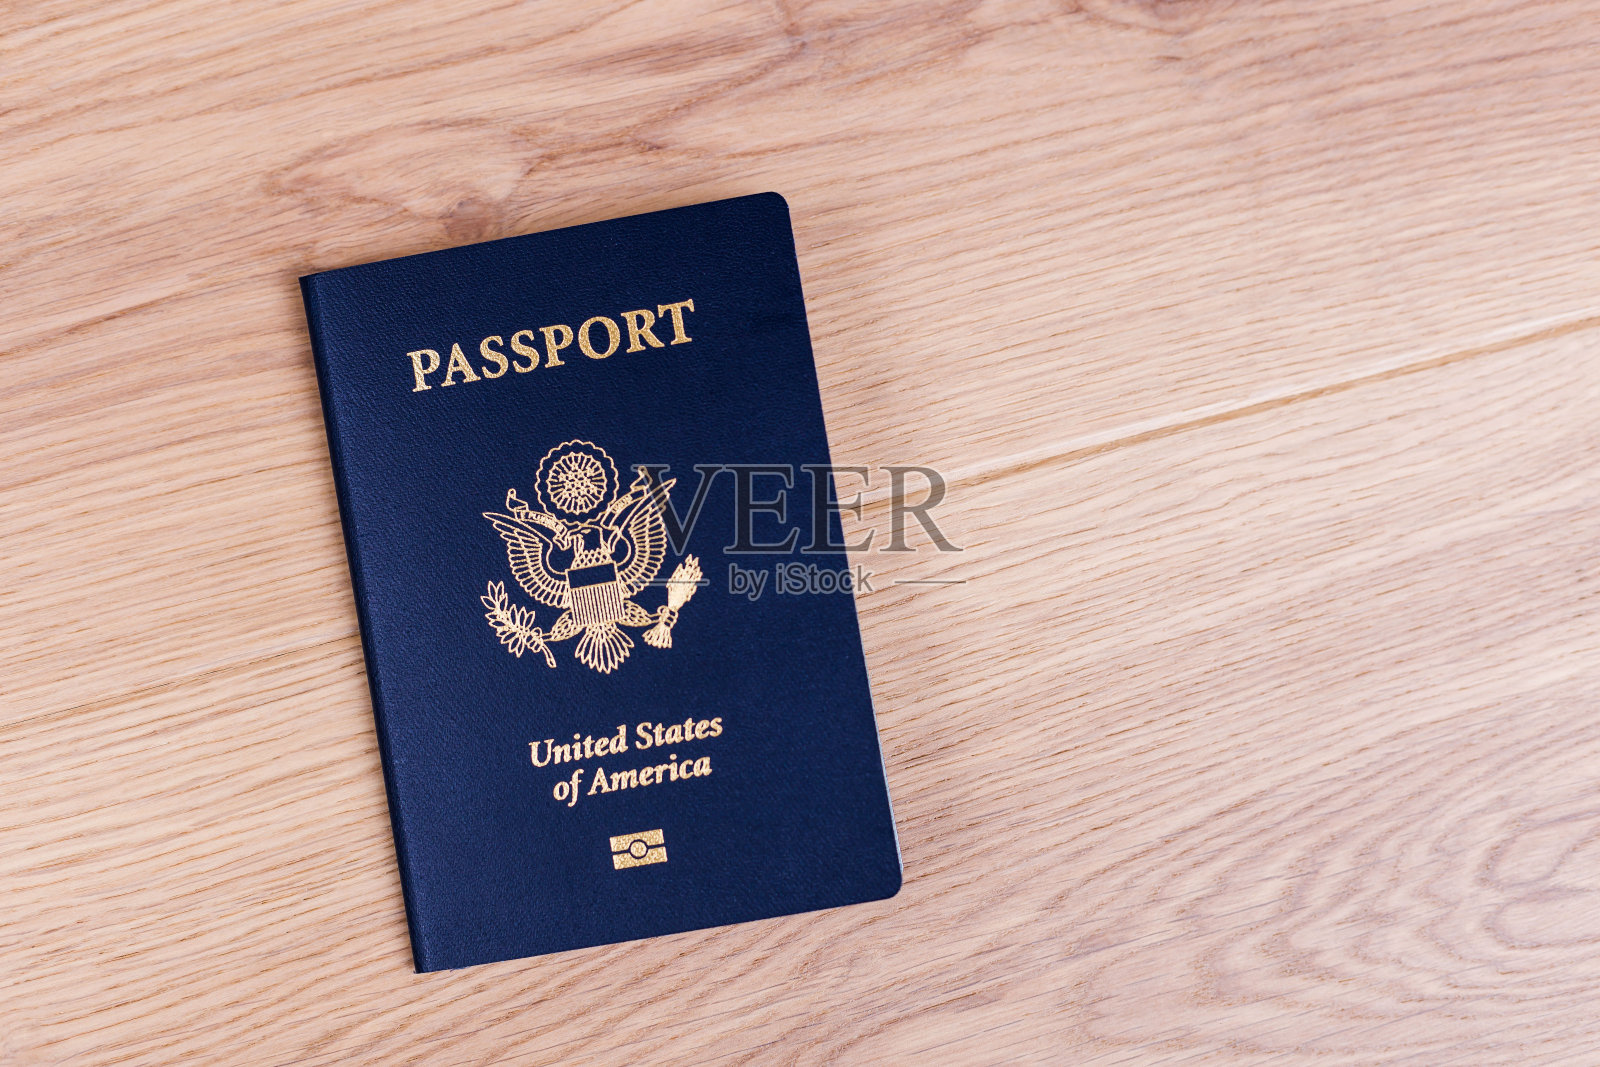 桌上的美国护照照片摄影图片